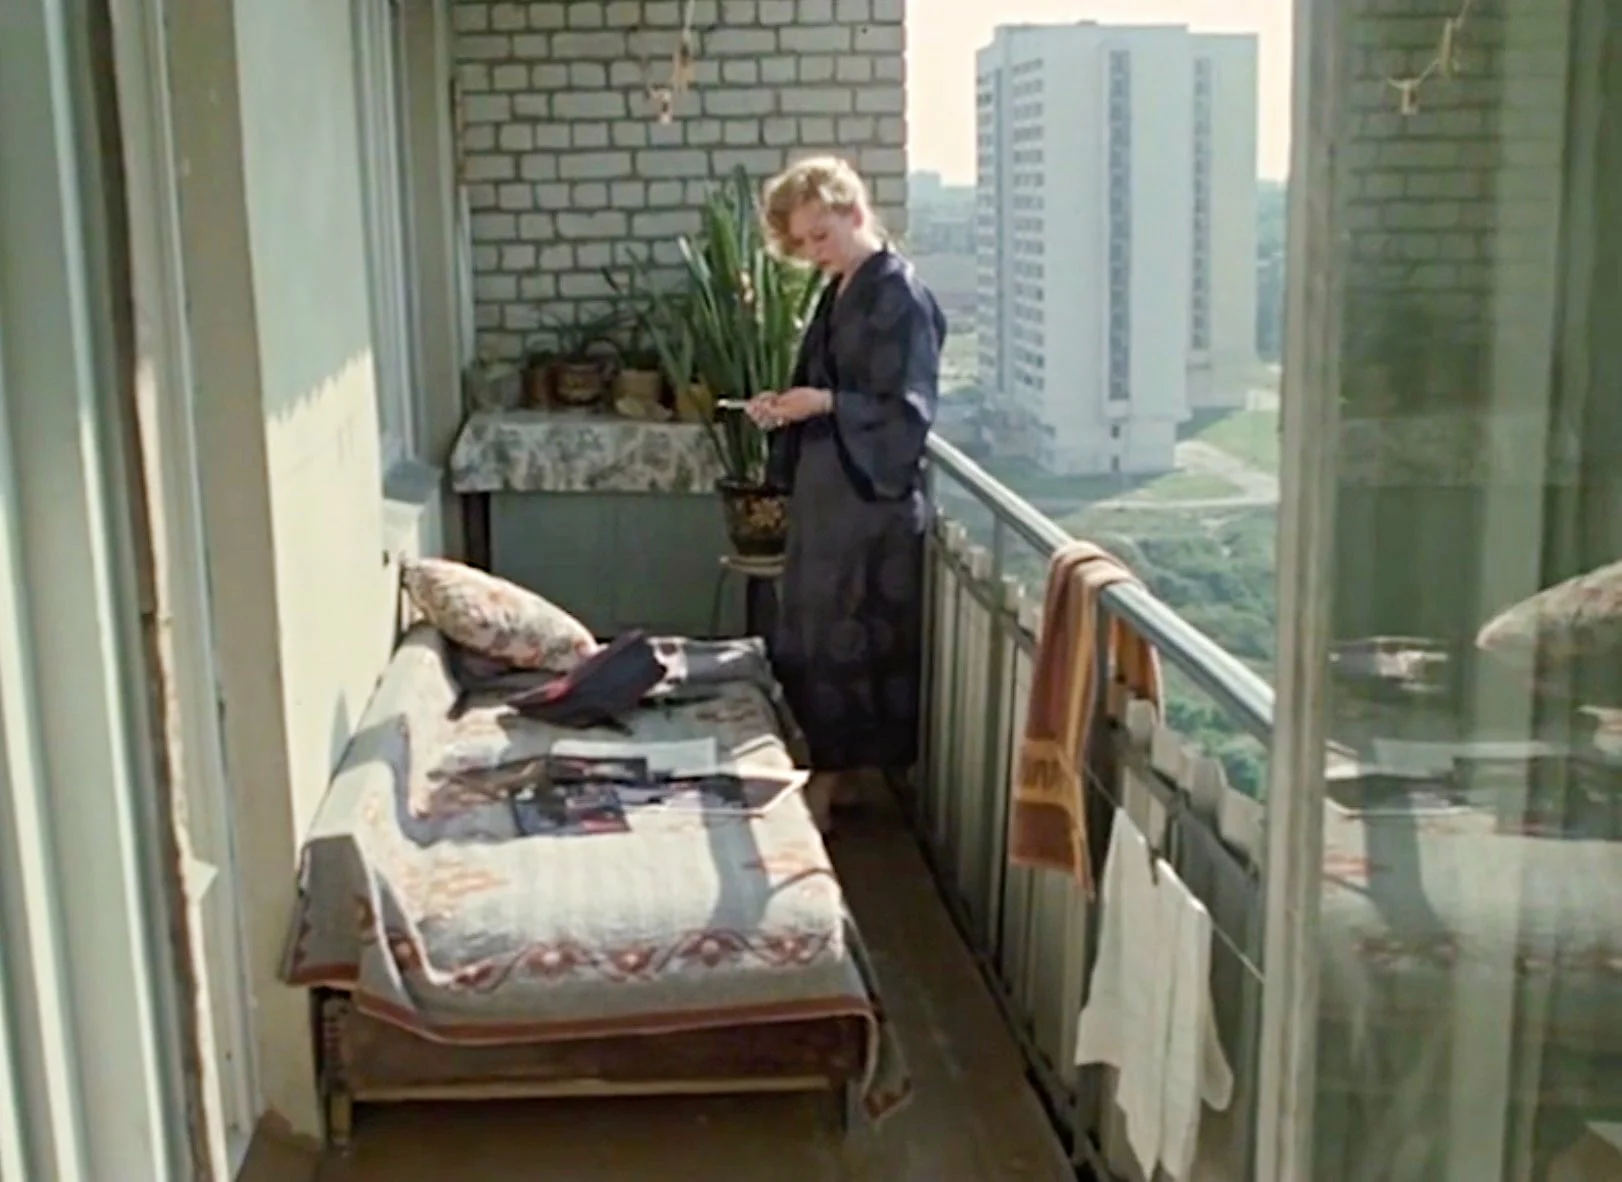 Квартира из фильма «Родня»: детали интерьера, как символ сытой жизни 80-ых